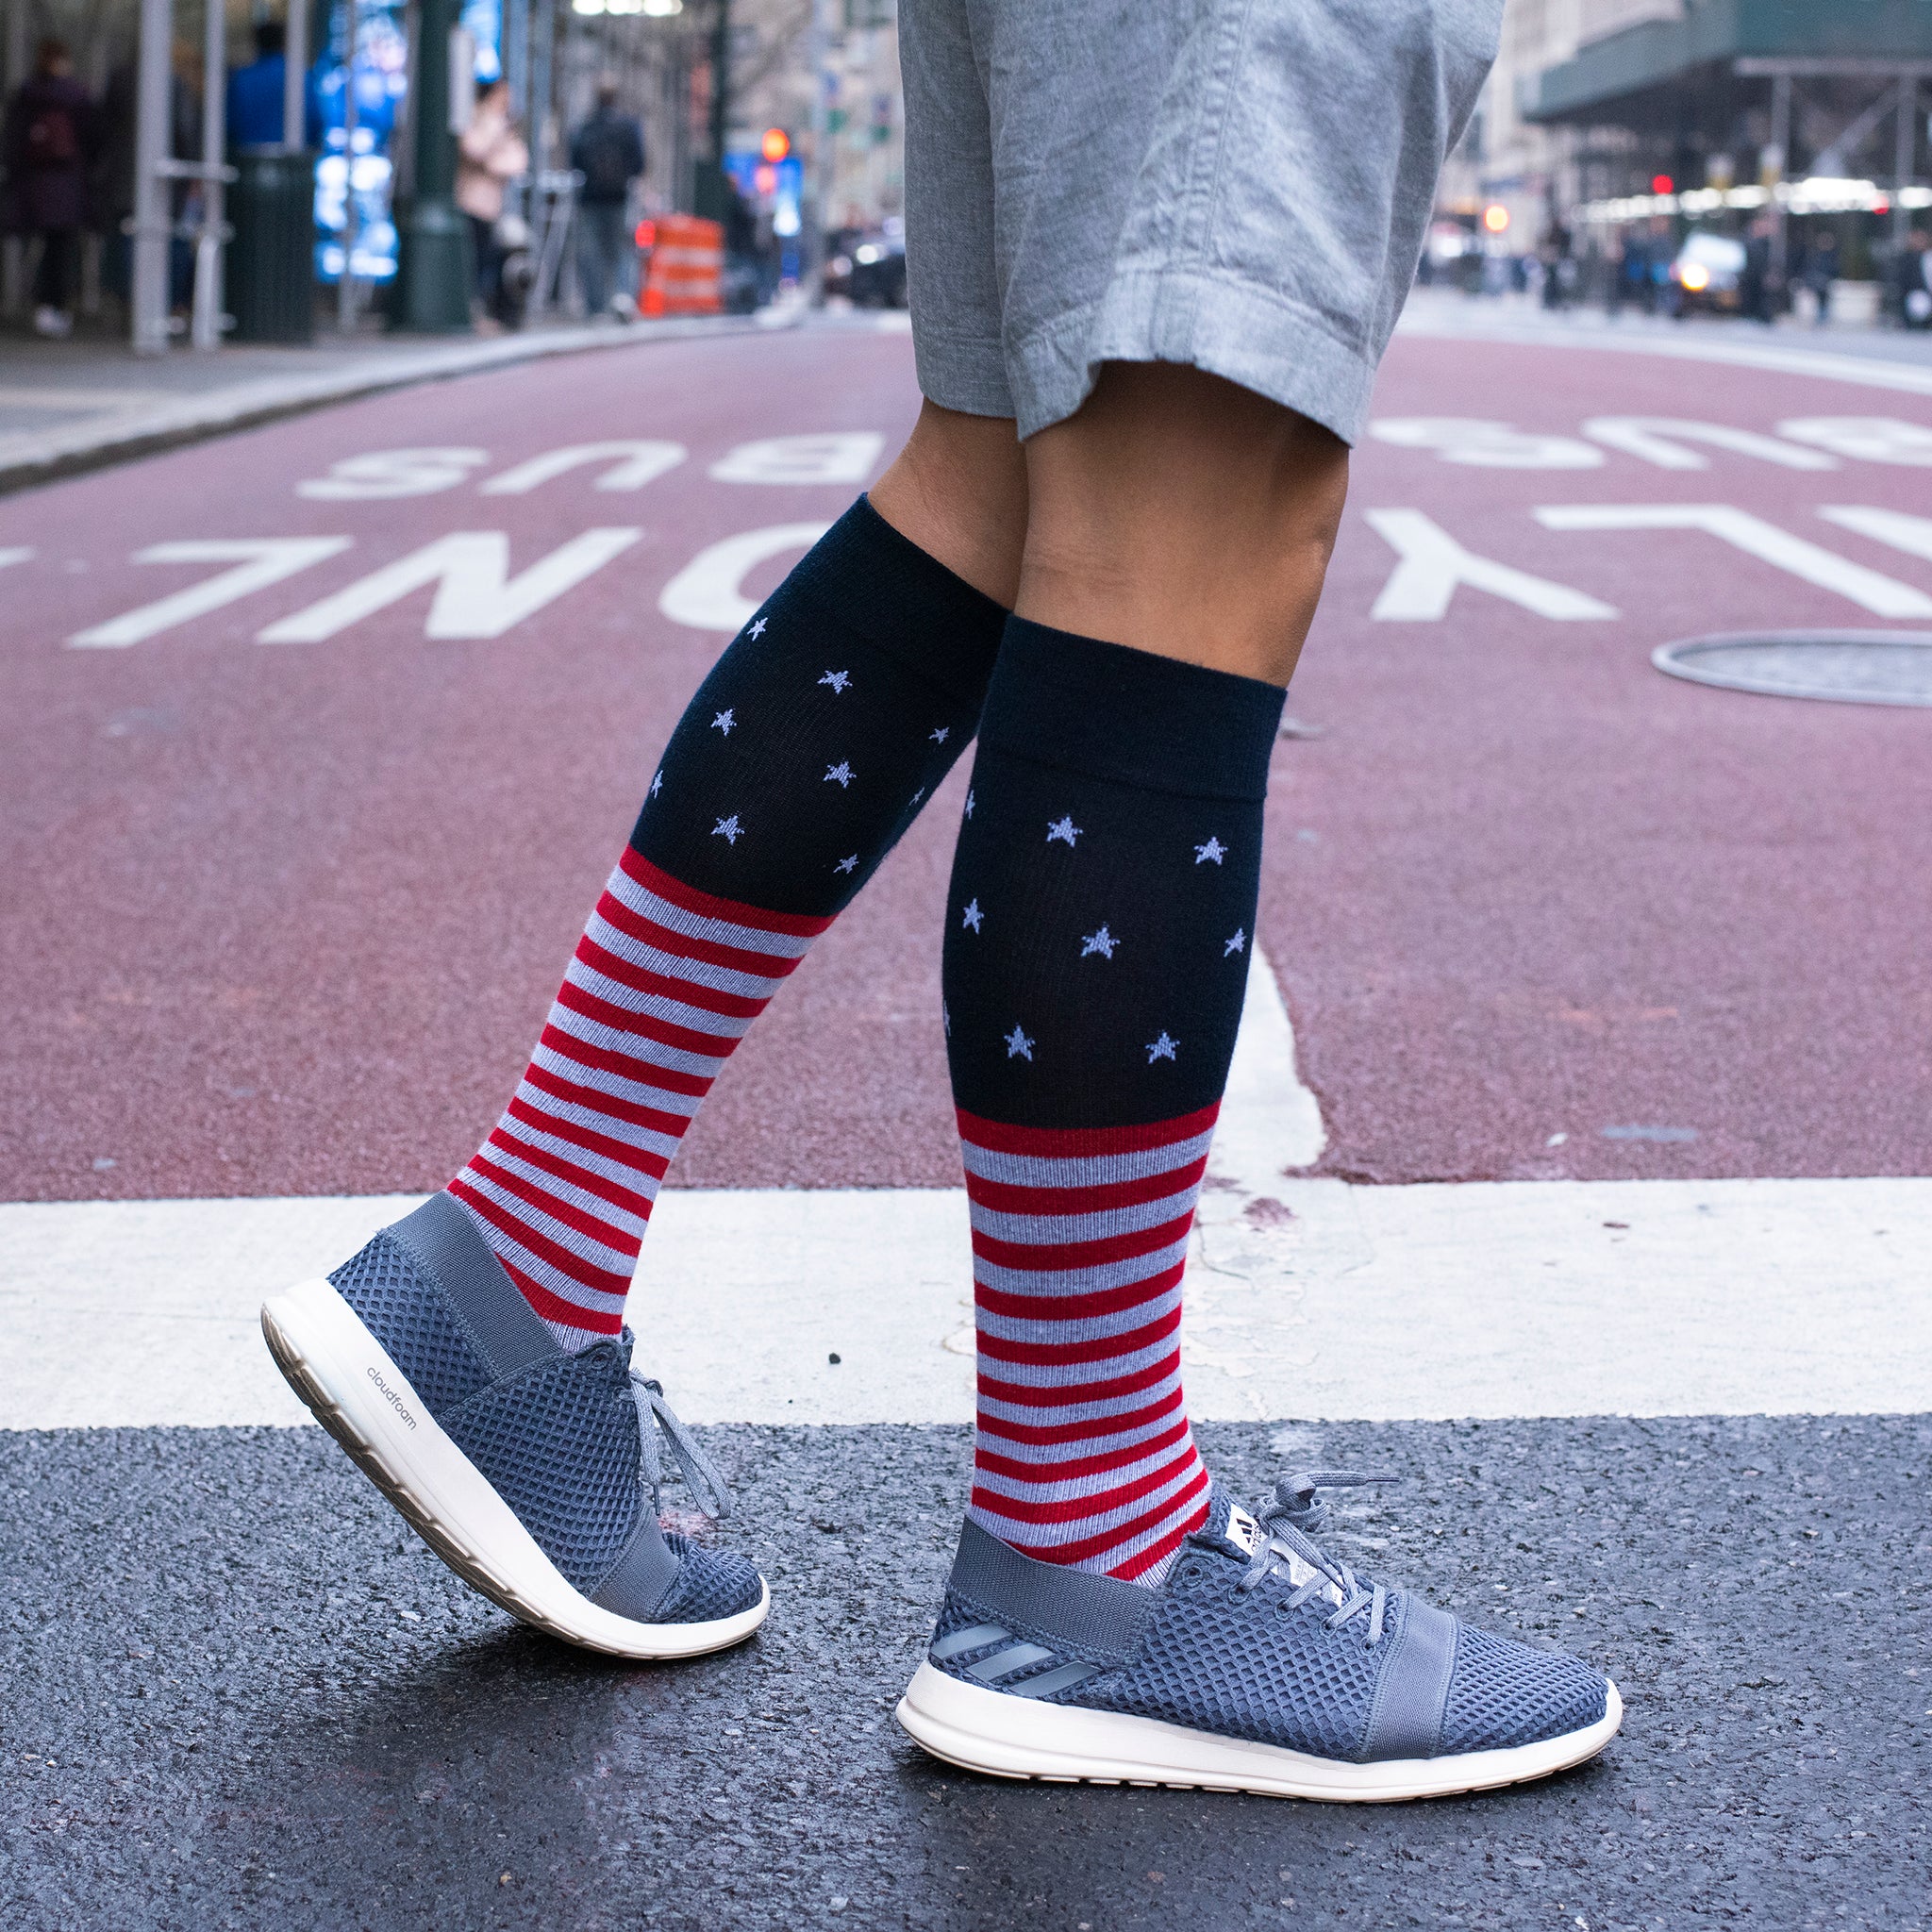 Stars Stripes | Knee-High Compression Socks For Men